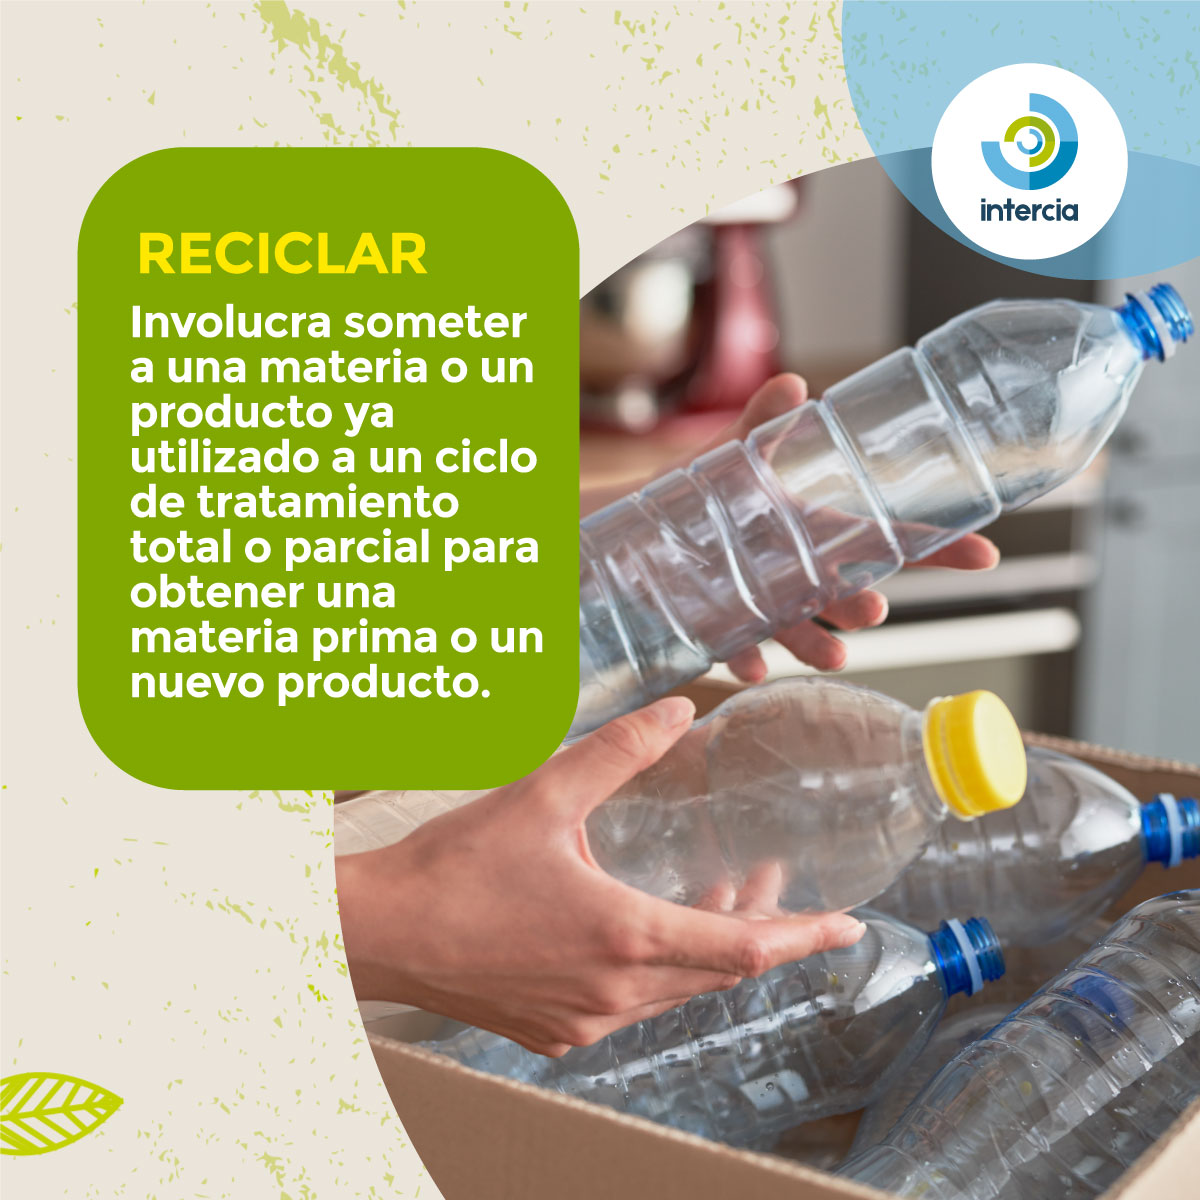 Esta suele ser una de las confusiones más comunes en el mundo de reciclaje. Por eso te compartimos los conceptos principales de reutilizar y reciclar, para aprender sobre su diferencia. ♻️ #Intercia #reciclajeecuador #reciclaje